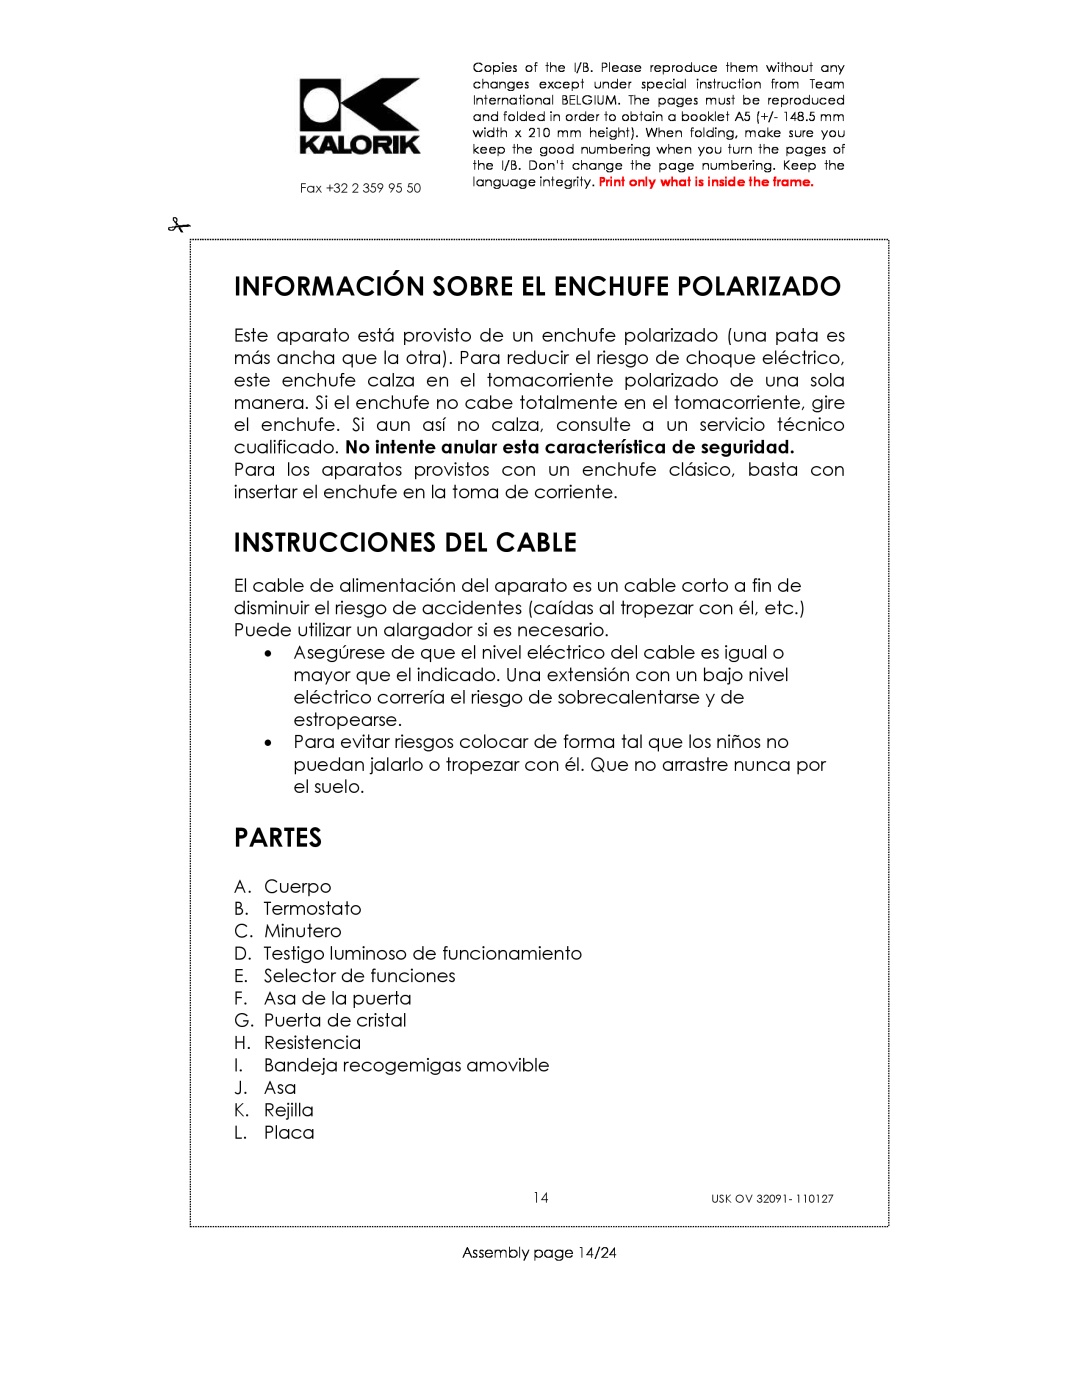 Kalorik USK OV 32091 manual Información Sobre El Enchufe Polarizado, Instrucciones Del Cable, Partes 